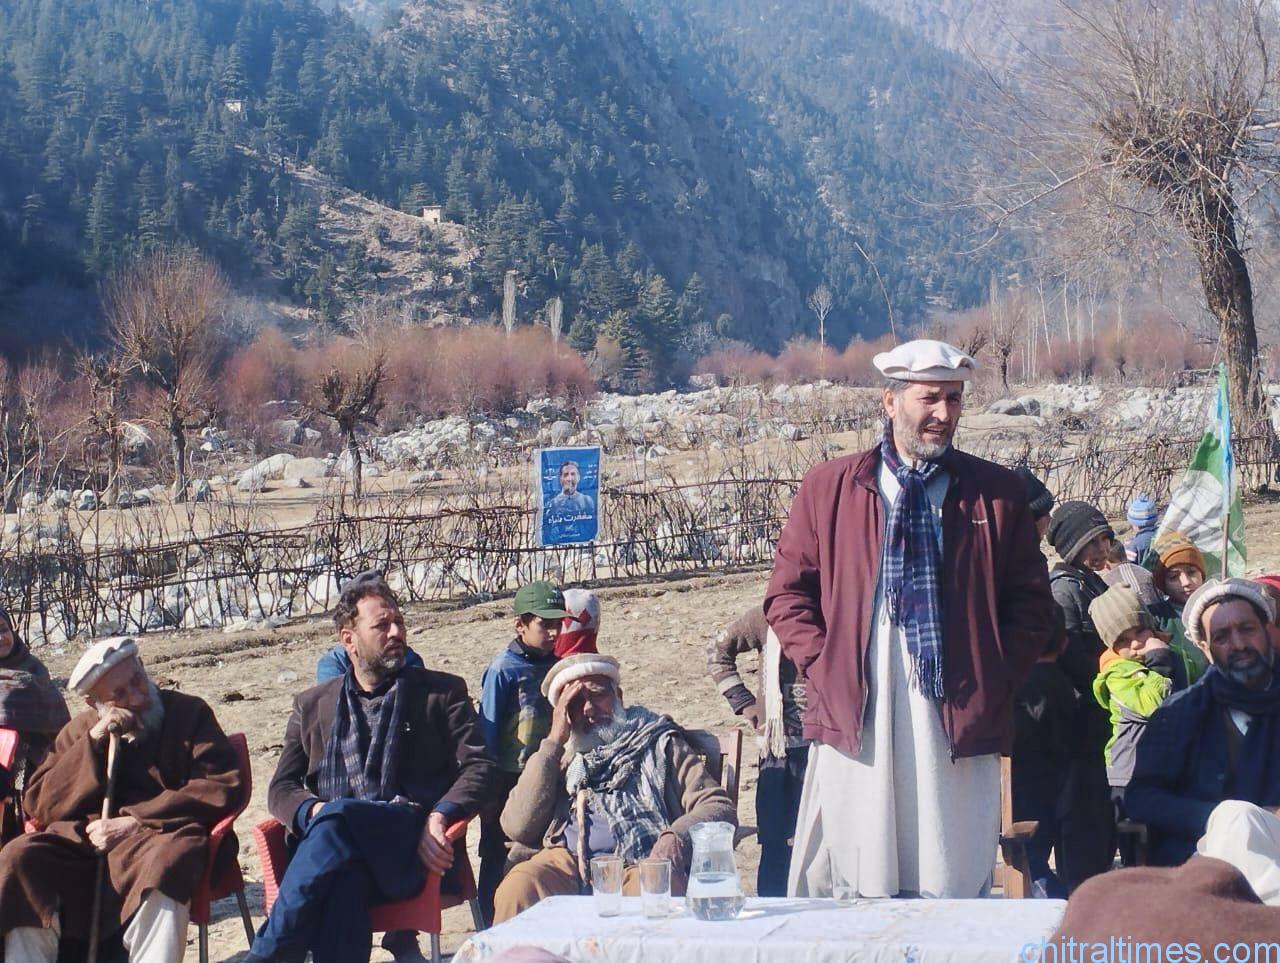 chitraltimes haji maghfirat shah election campaign kalash valley 3